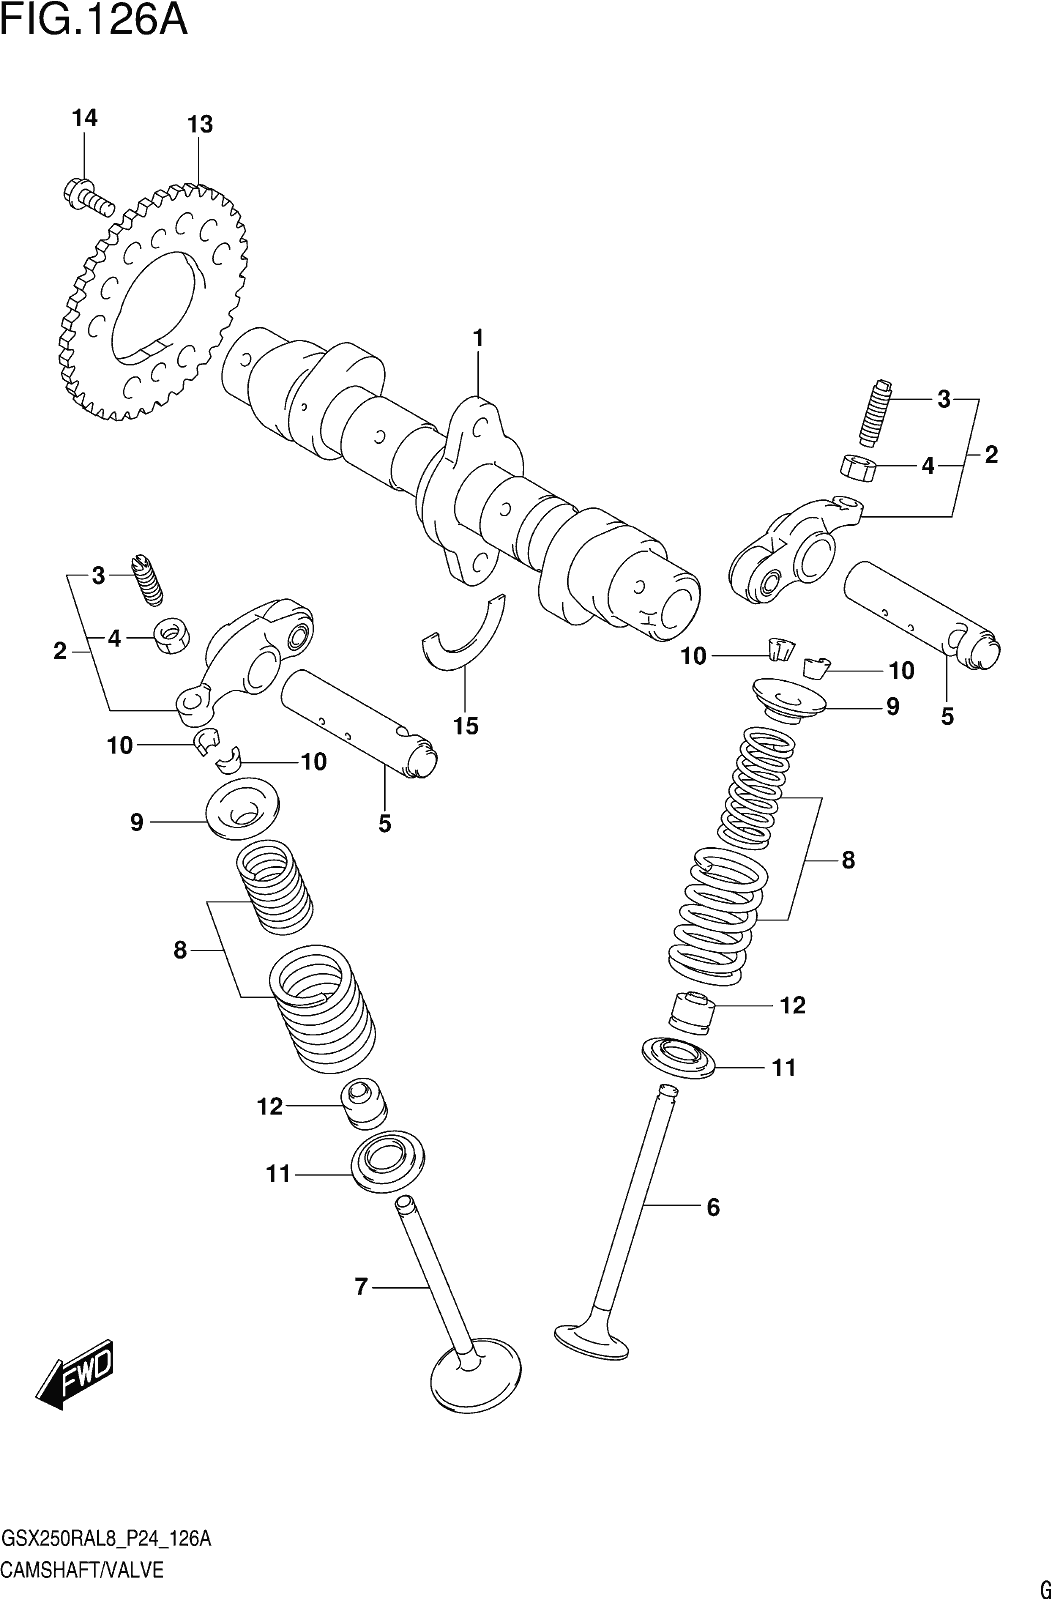 Fig.126a Camshaft/valve